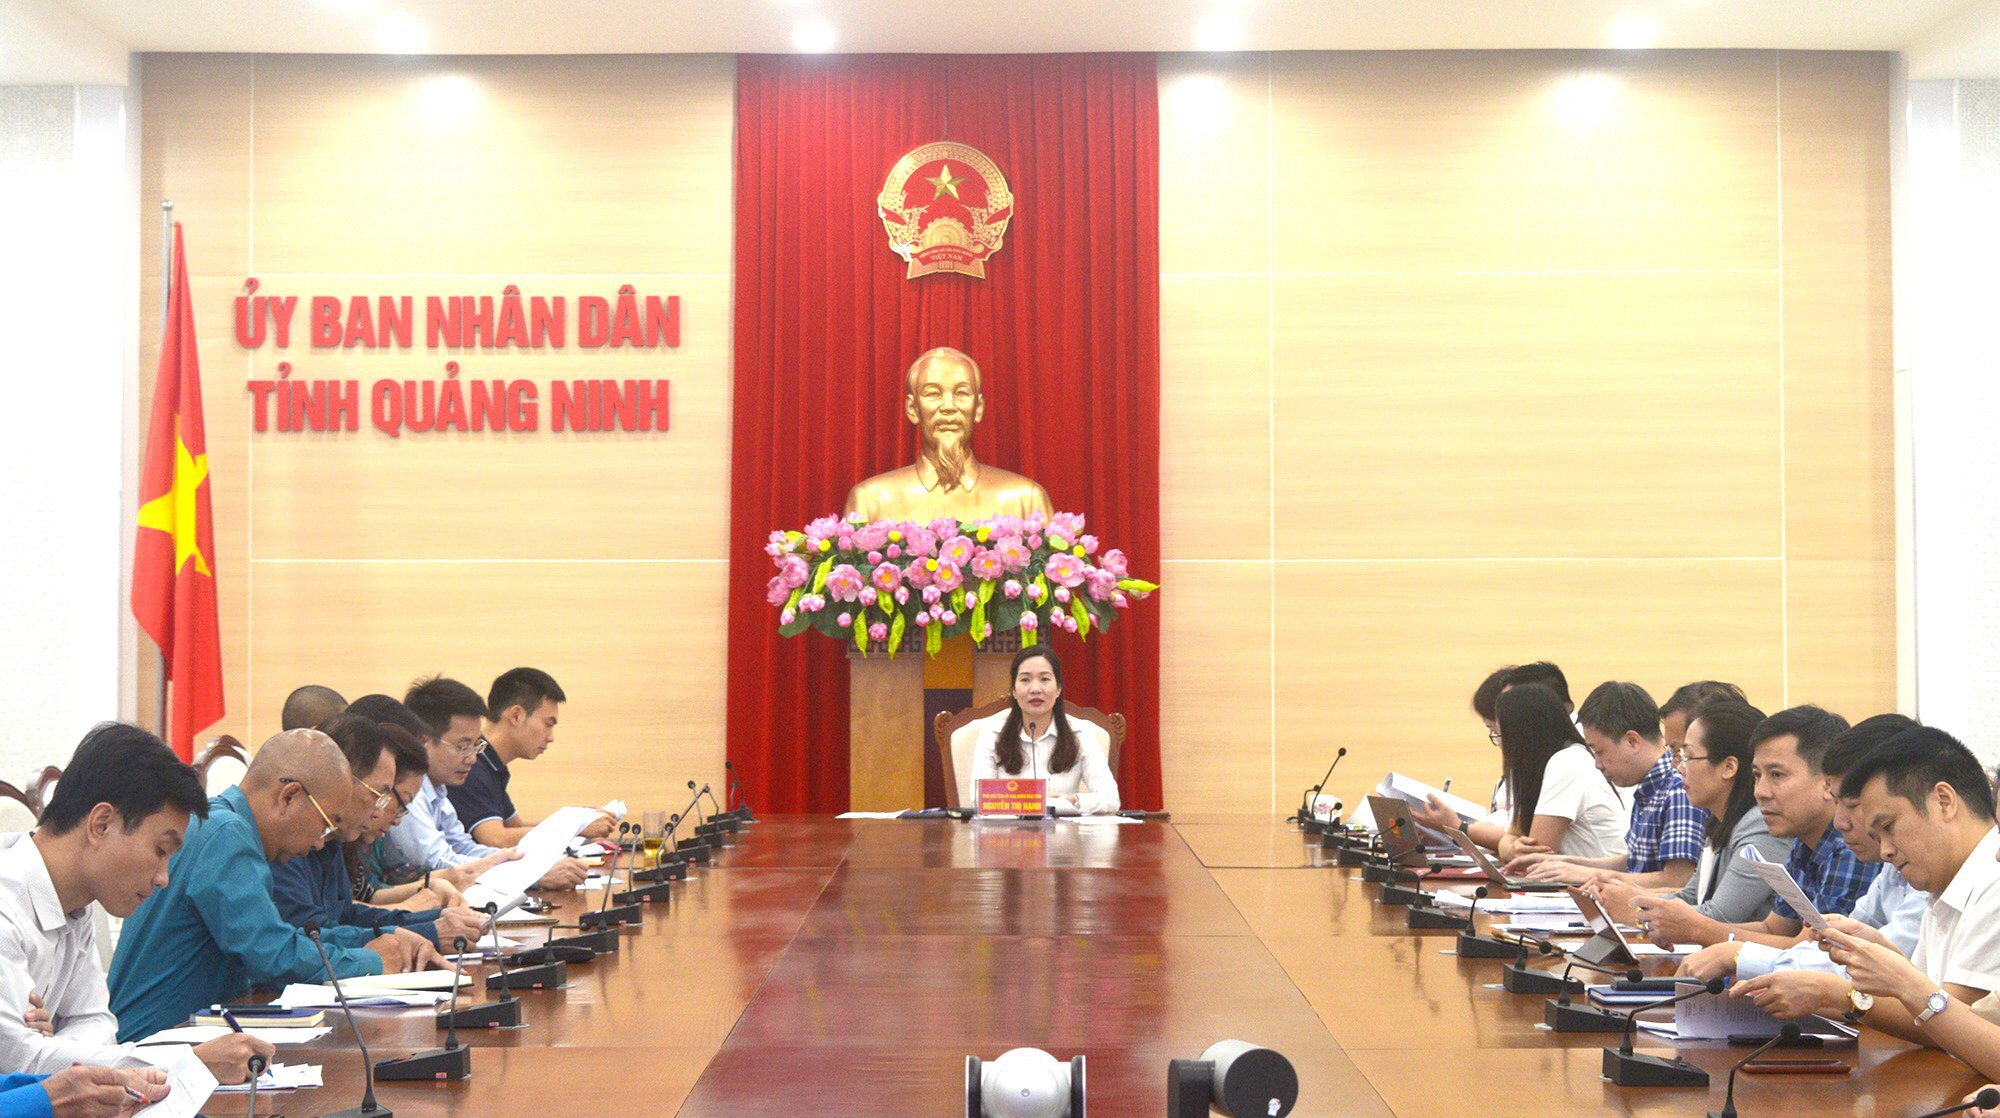 Đồng chí Nguyễn Thị Hạnh, Phó Chủ tịch UBND tỉnh, dự và chỉ đạo cuộc họp.